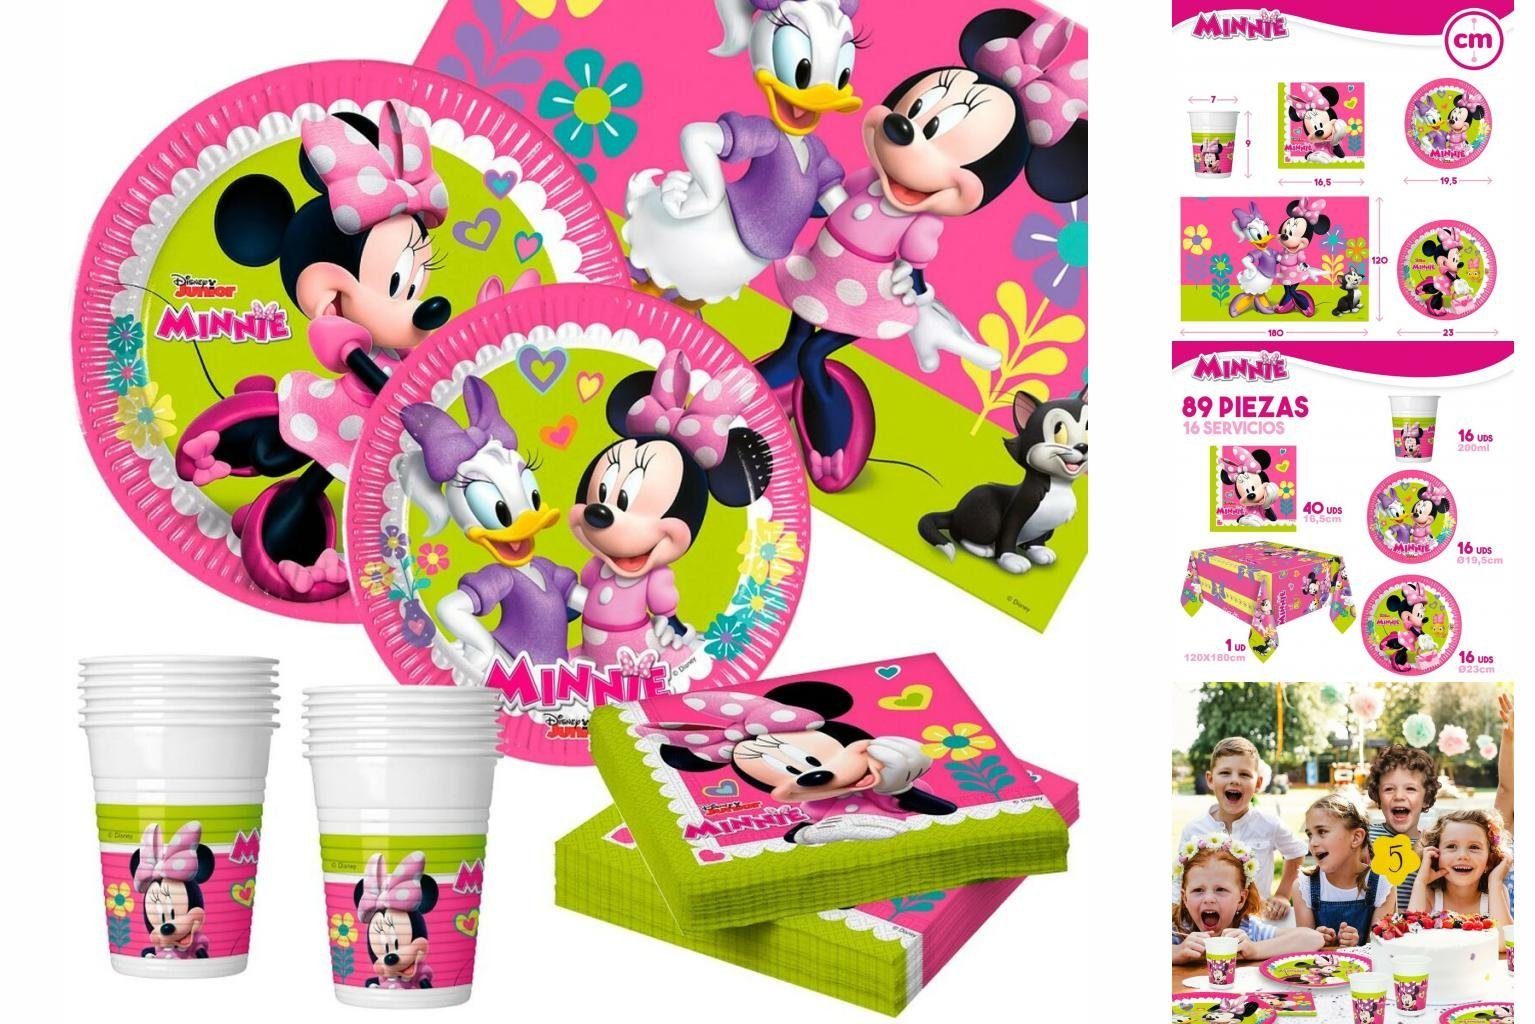 Set Mouse 16 Minnie Minnie Einweggeschirr-Set Stücke Mouse Disney Partyartikel Happy Deluxe 89